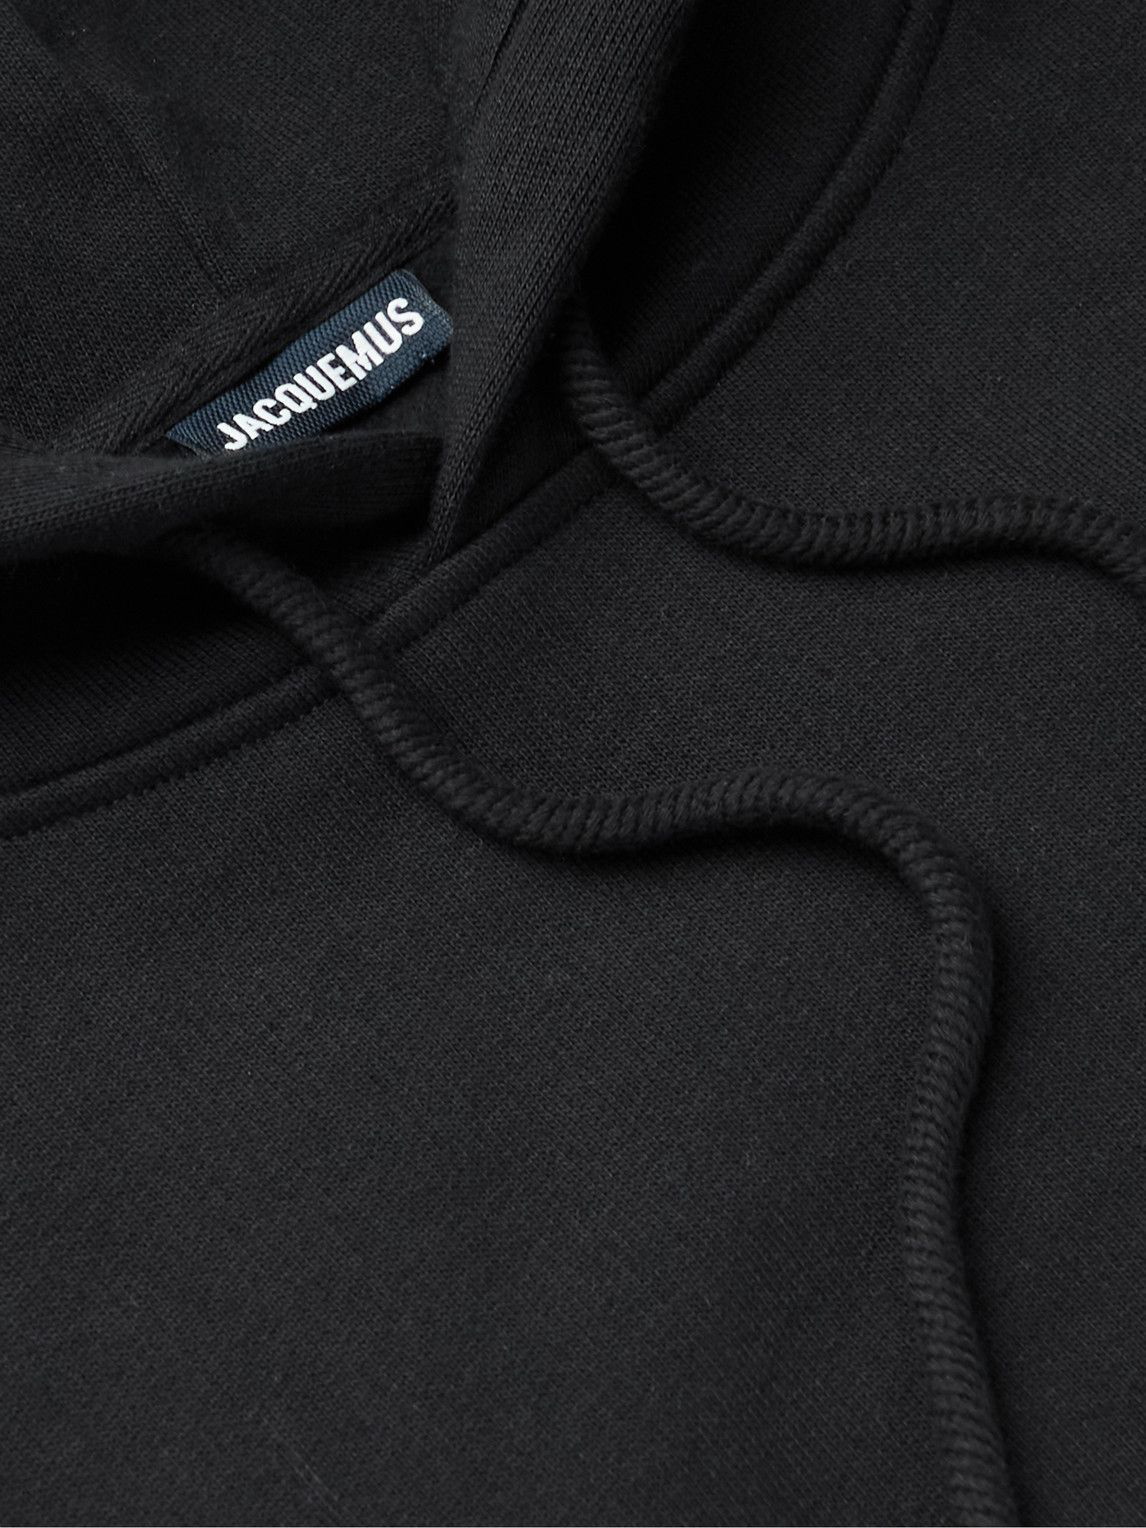 Embroidered signature black hoodie, Jacquemus